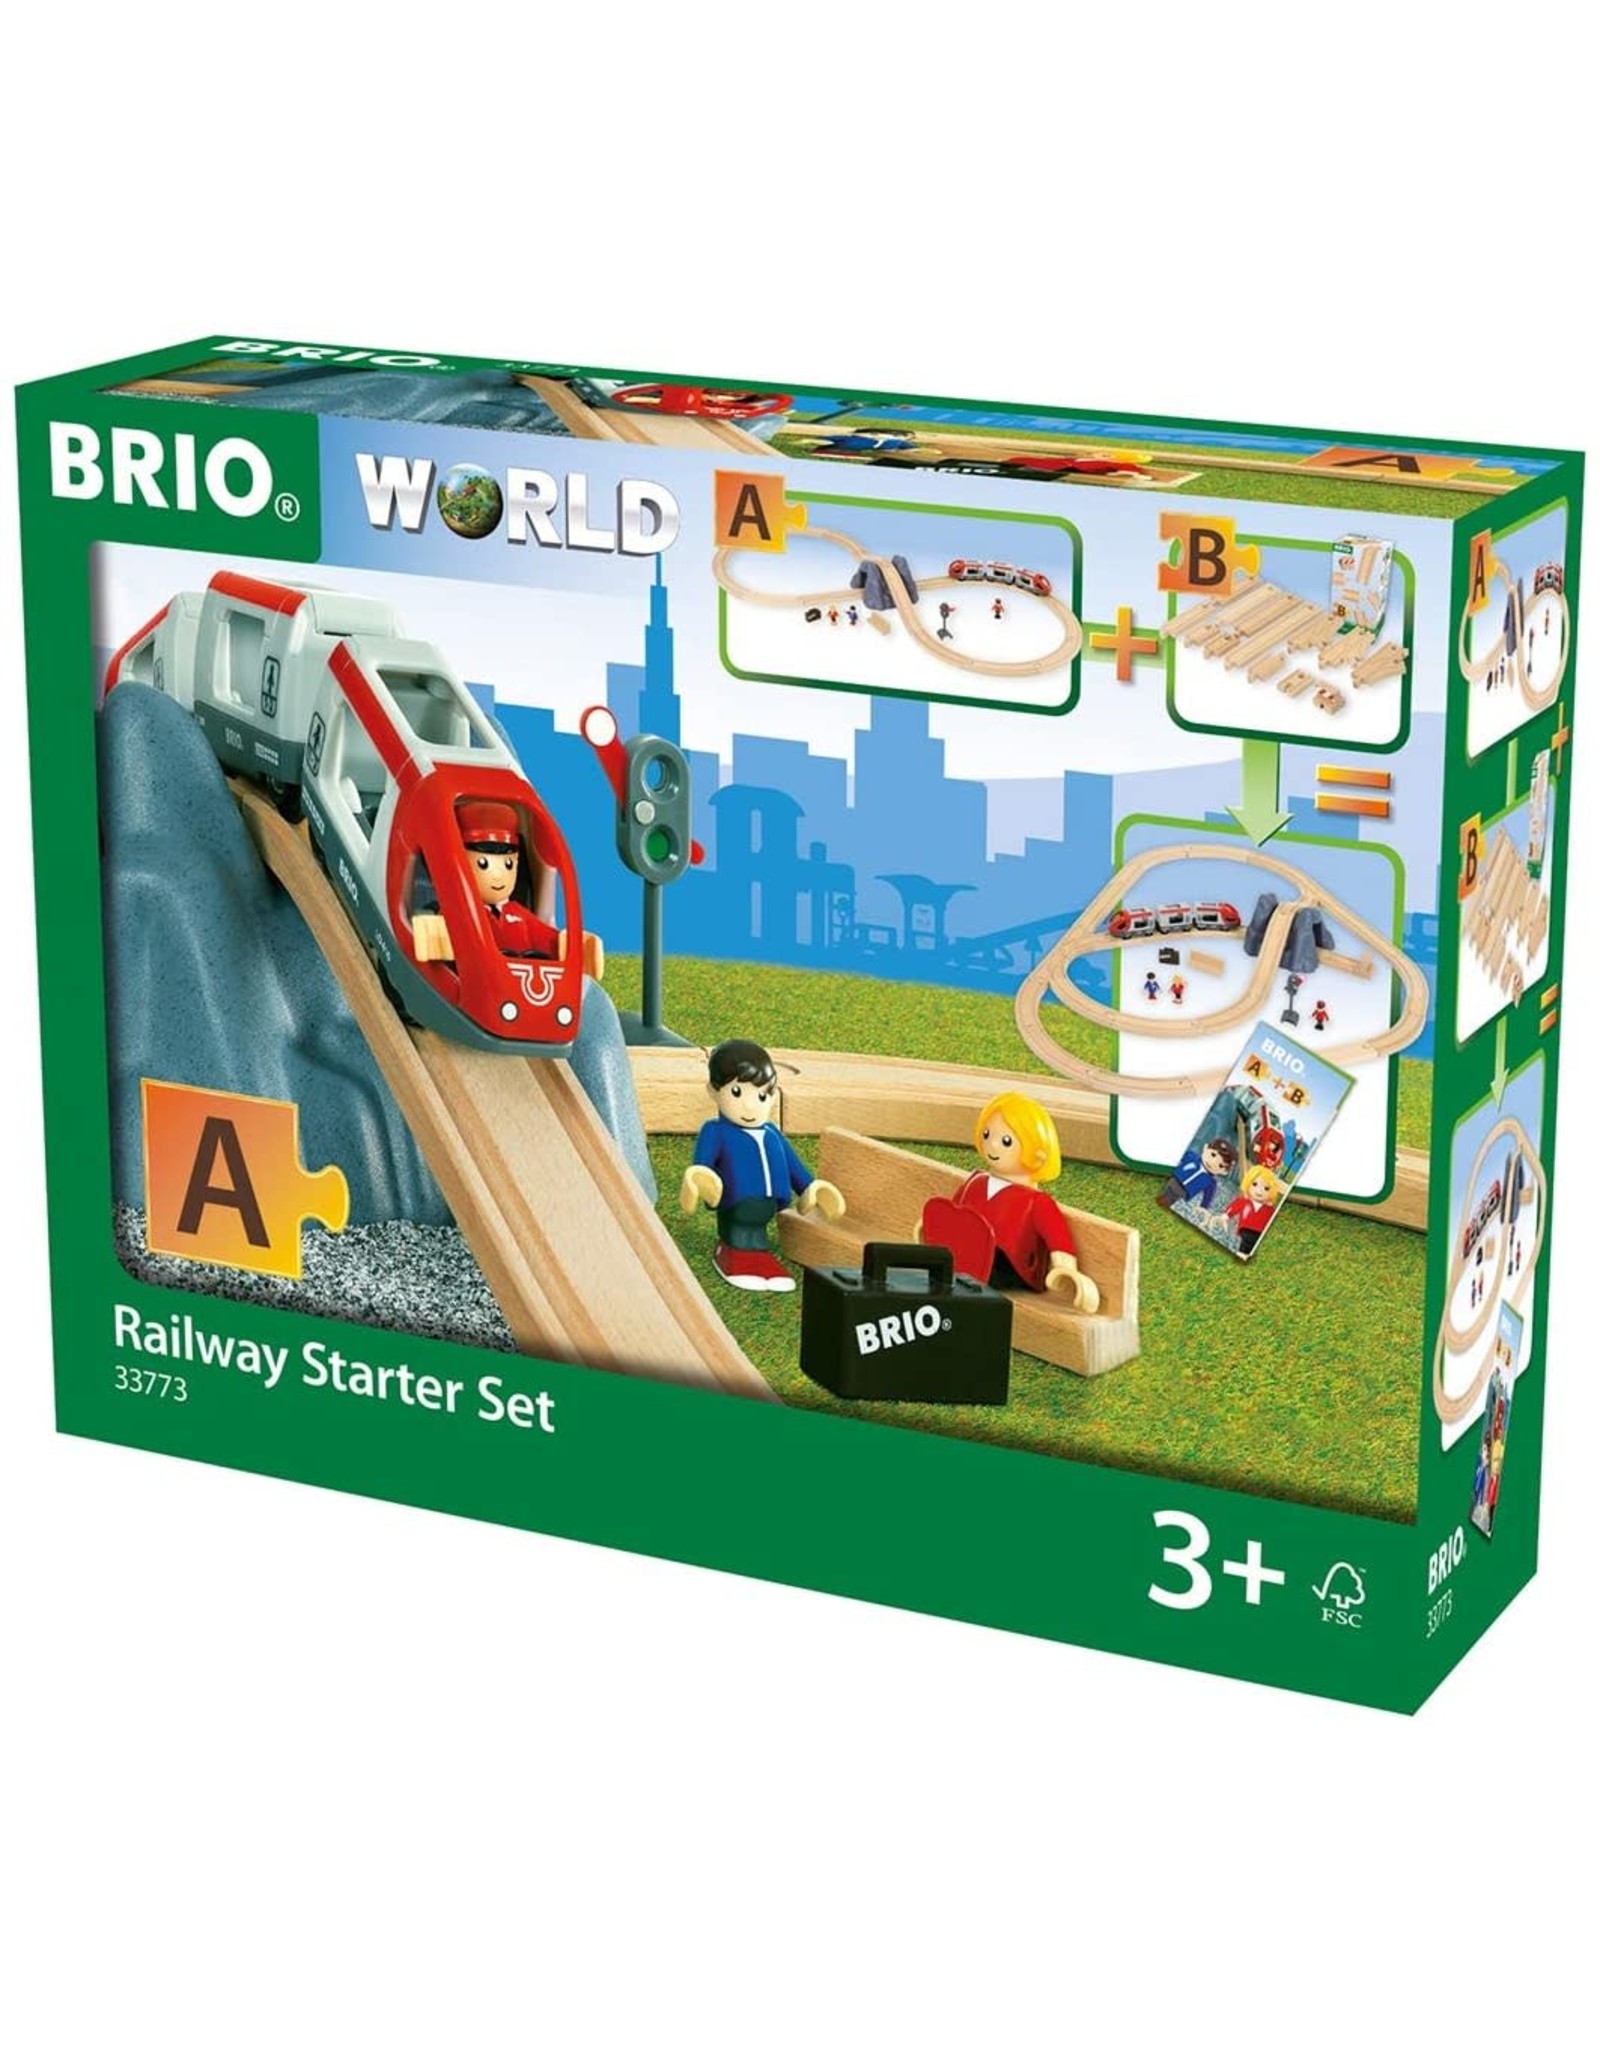 Brio BRIO Railway Starter Set